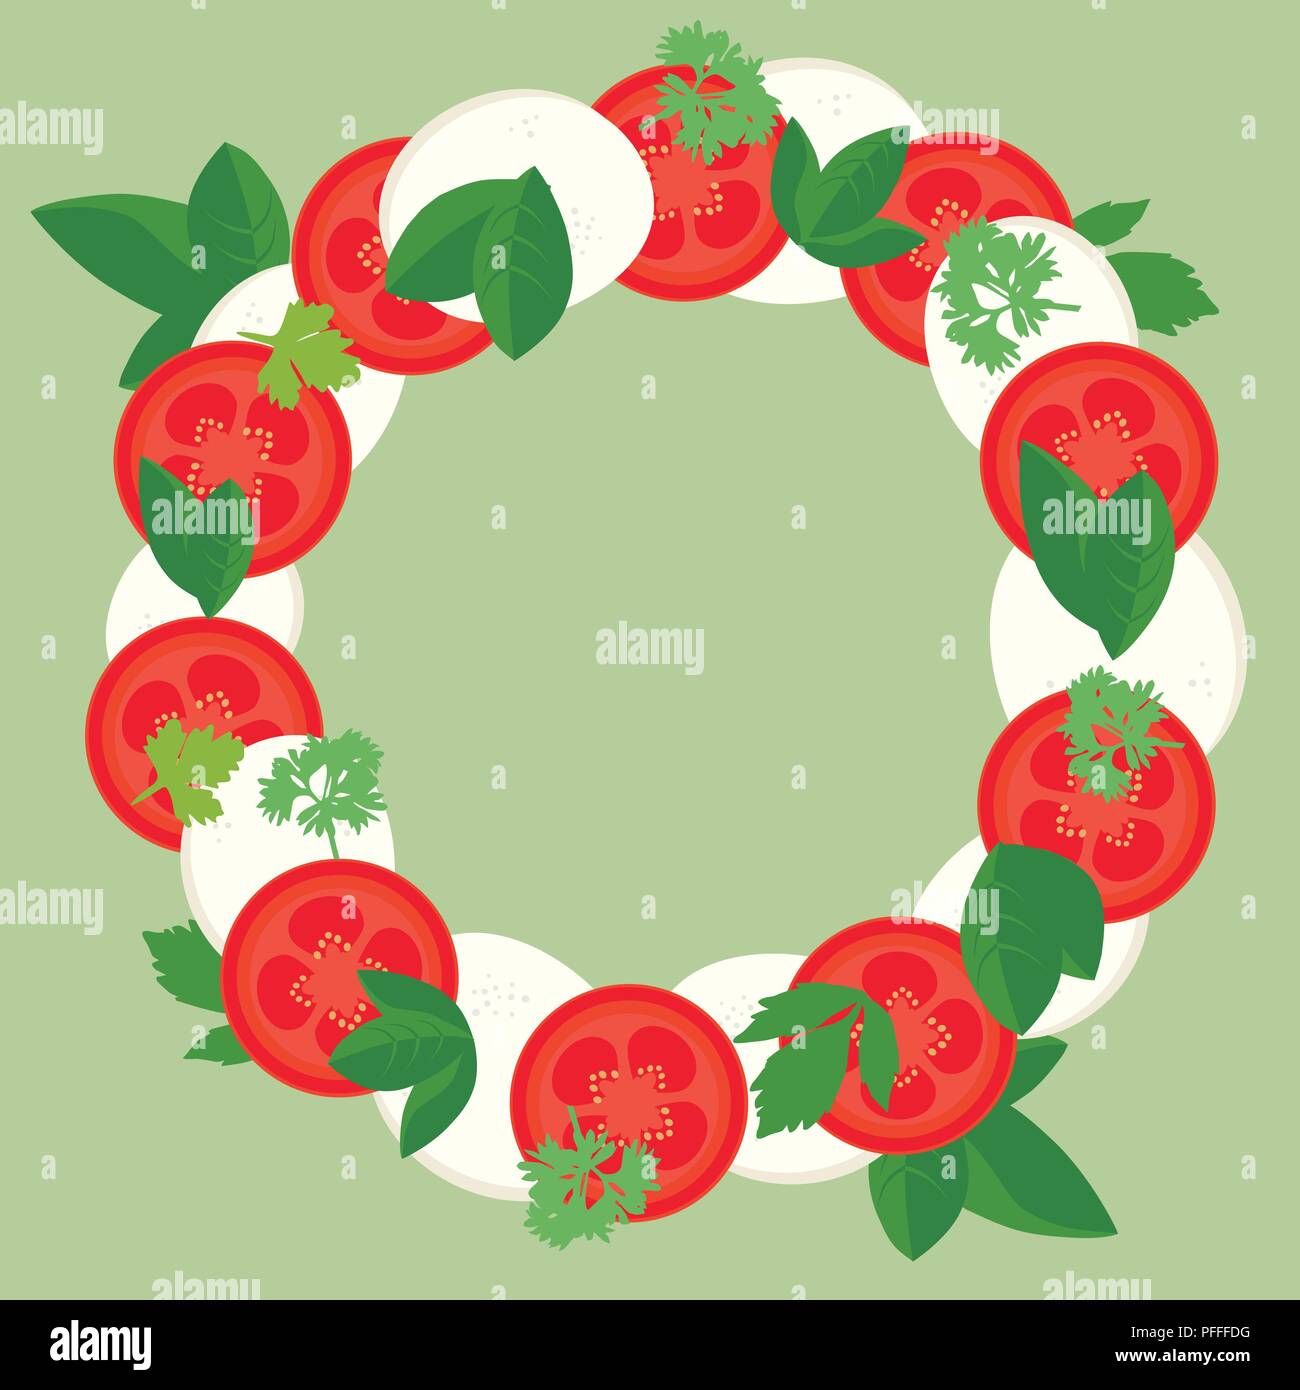 Diseño plano ilustración del bastidor redondo de rodajas de tomate y mozzarella, albahaca y hojas de perejil, aislado sobre fondo verde con SP Ilustración del Vector